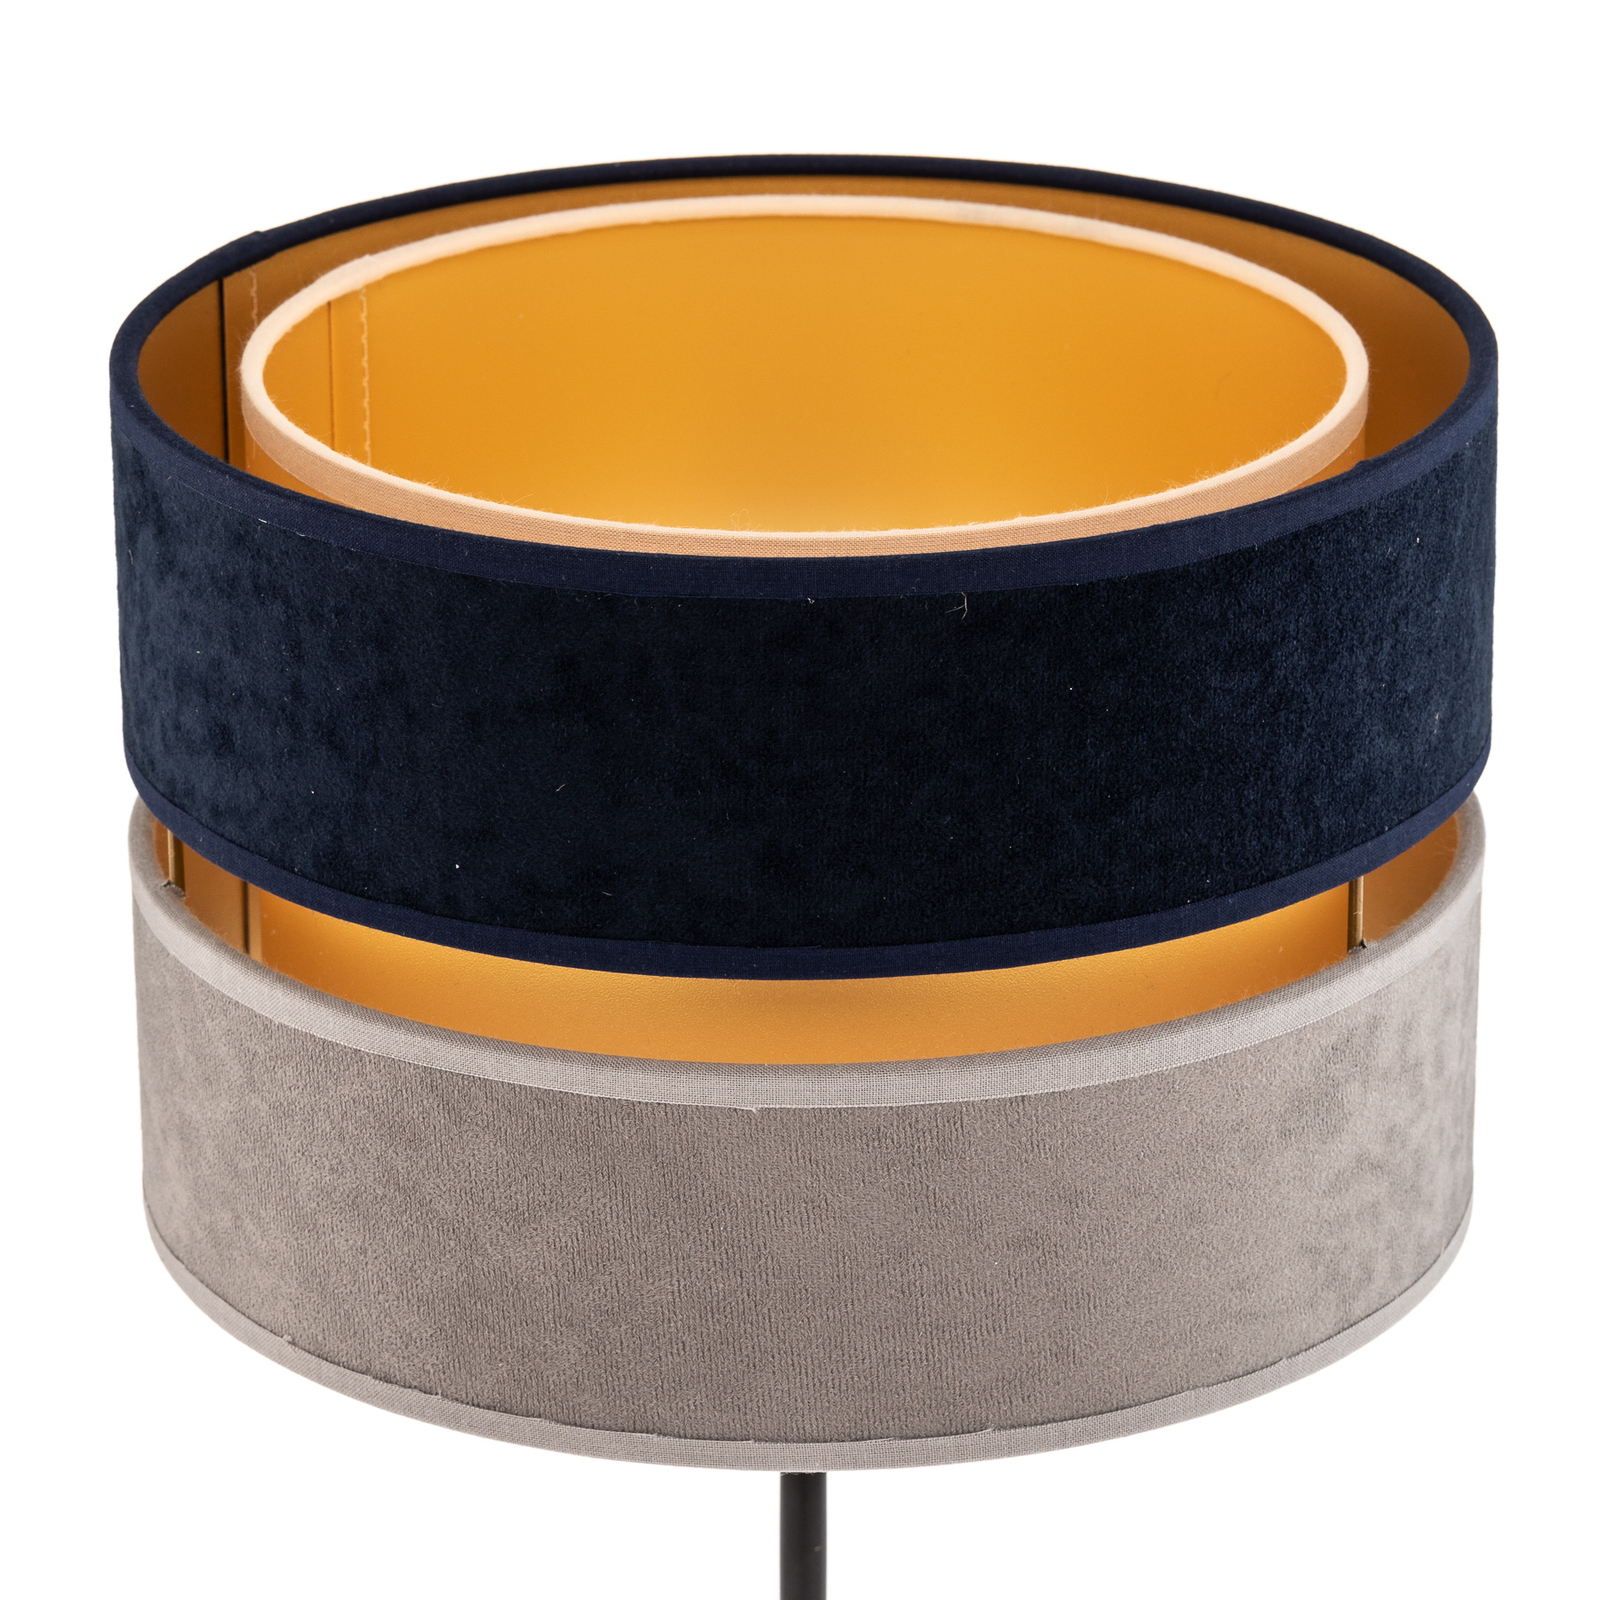 Pöytälamppu Duo sininen/harmaa/kulta, korkeus 50cm